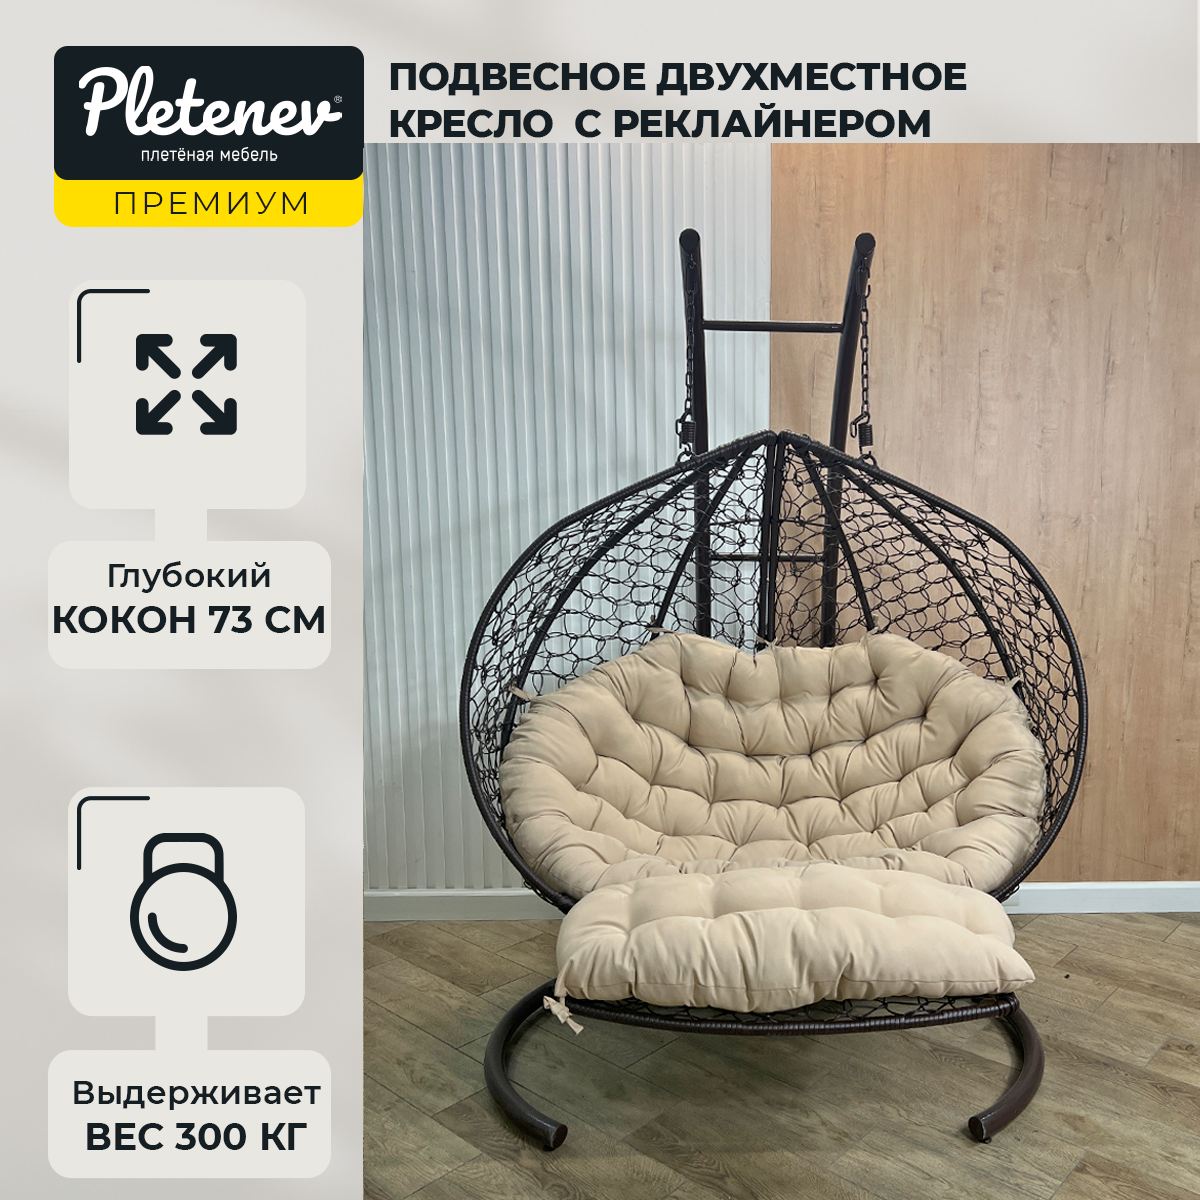 Подвесное кресло-реклайнер "Pletenev", двухместное, коричневое, со бежевой подушкой